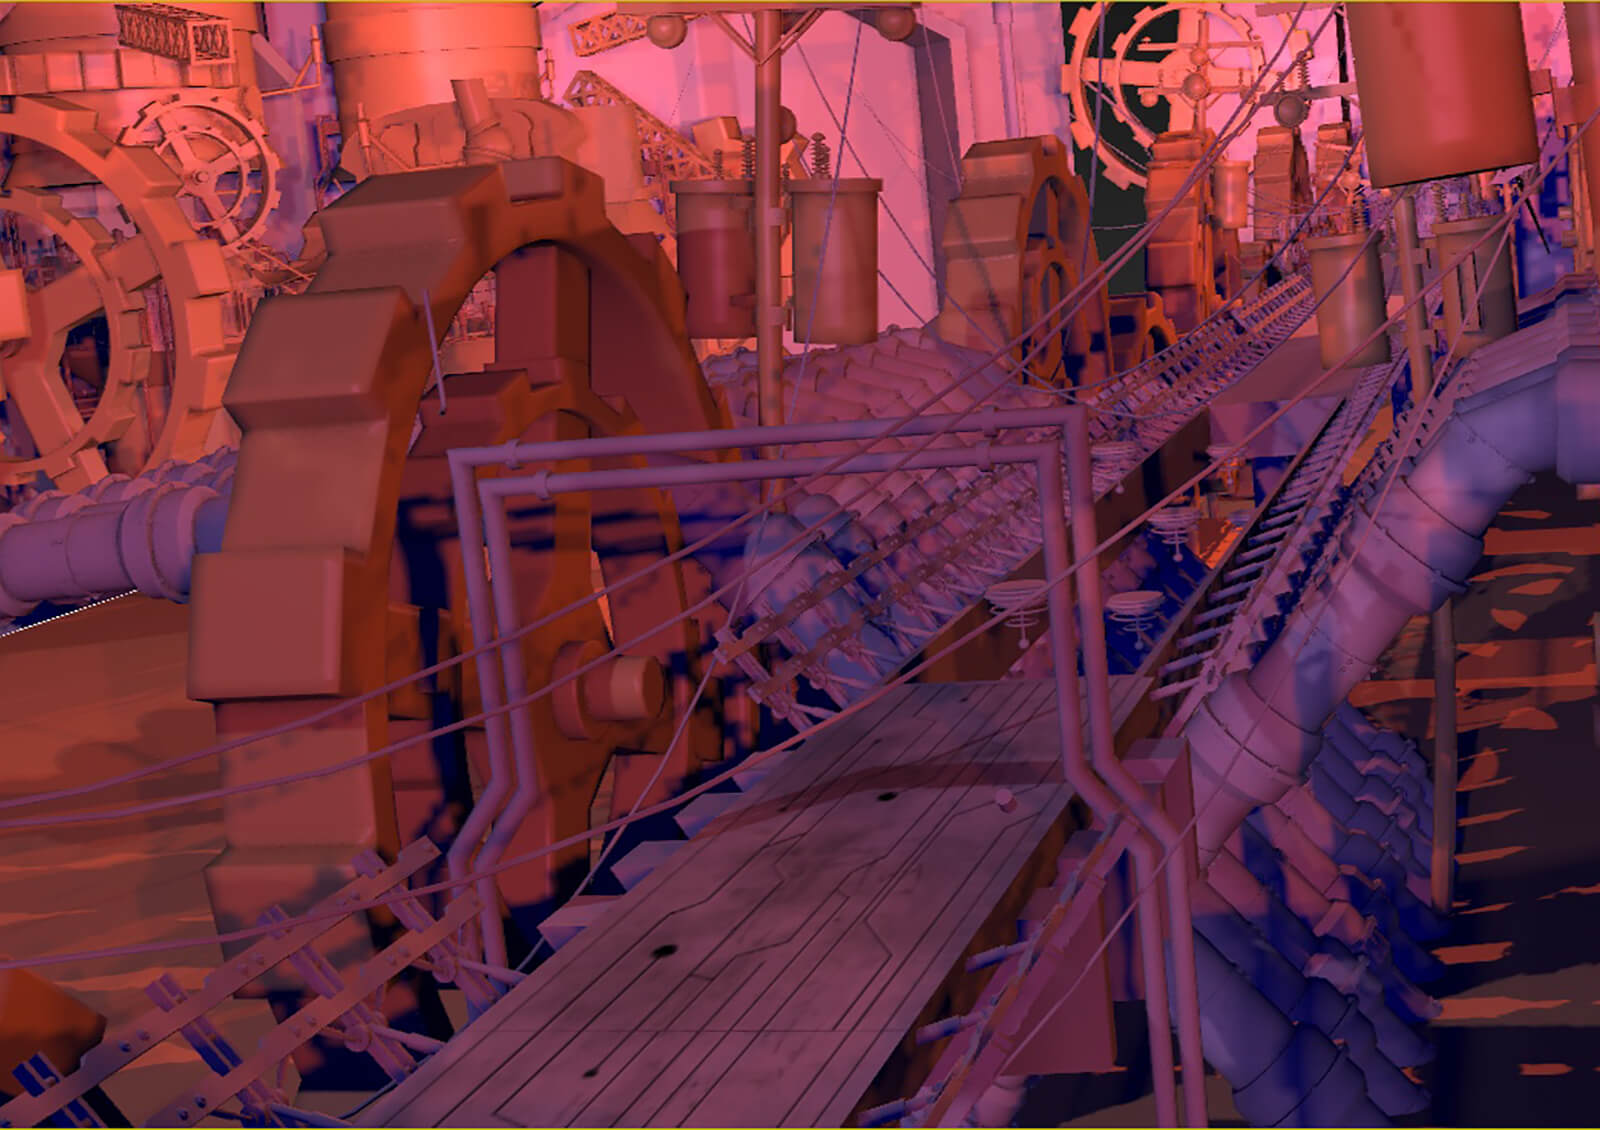 Modelo en 3D de un corredor industrial con engranajes, tuberías y postes, del cortometraje Deadly Delivery.